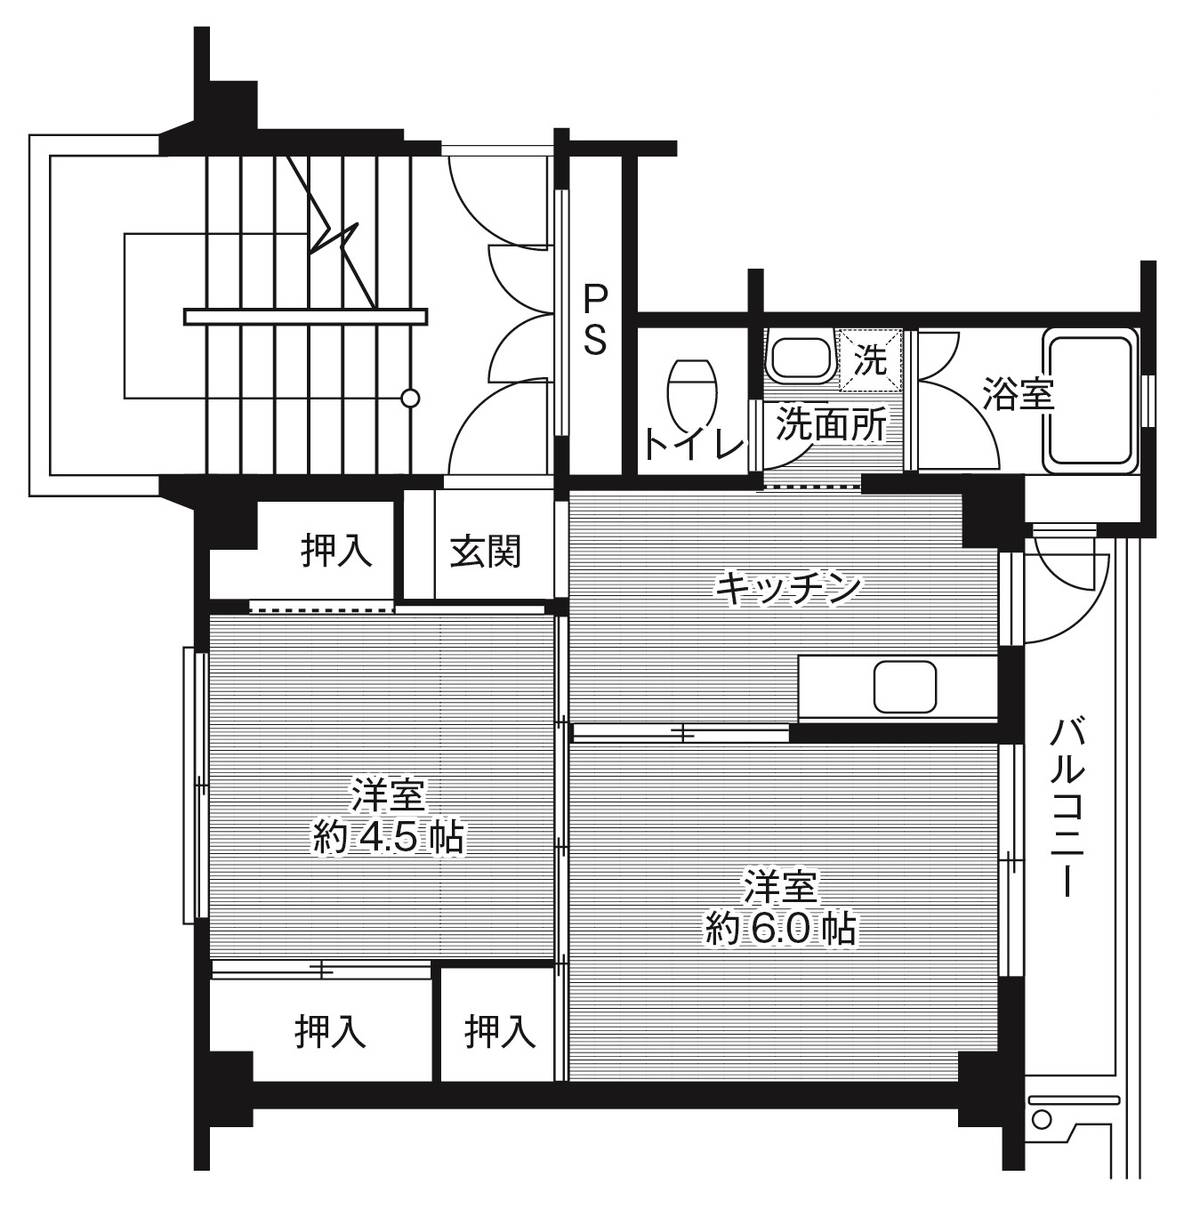 Sơ đồ phòng 2K của Village House Chikuya ở Matsue-shi